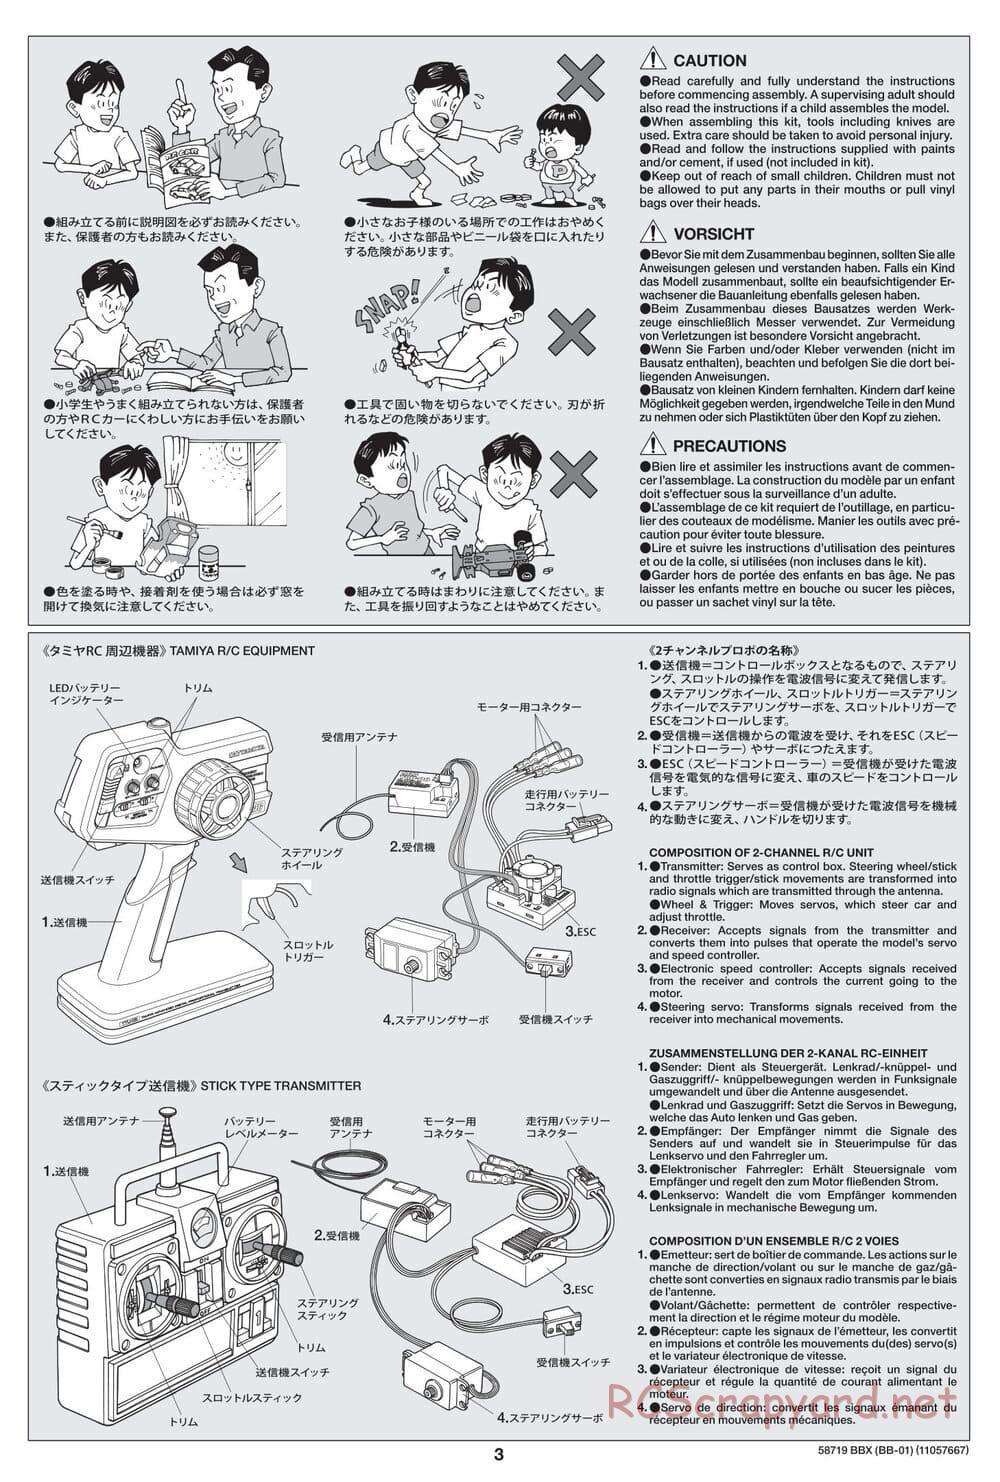 Tamiya - BBX - BB-01 Chassis - Manual - Page 3